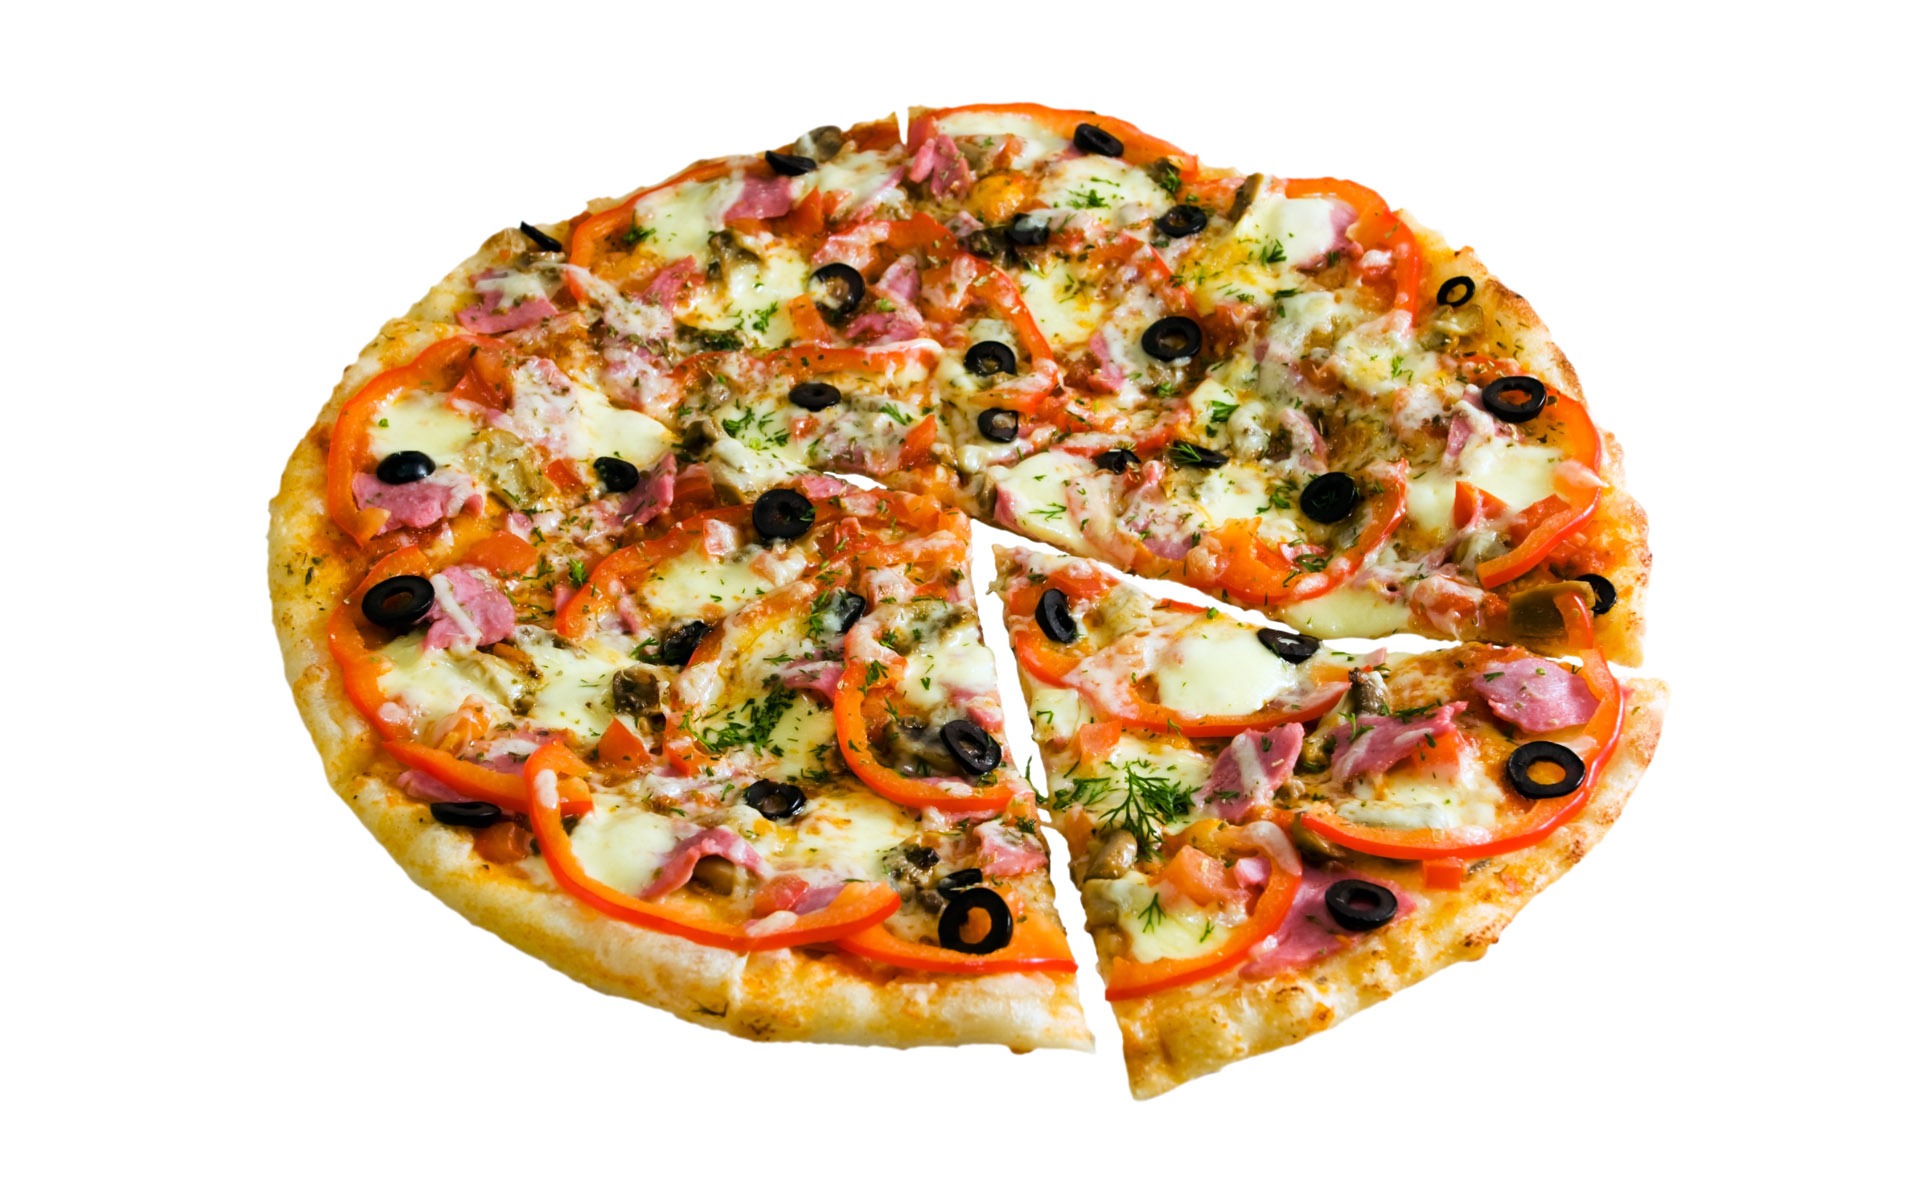 Fondos de pizzerías de Alimentos (4) #10 - 1920x1200